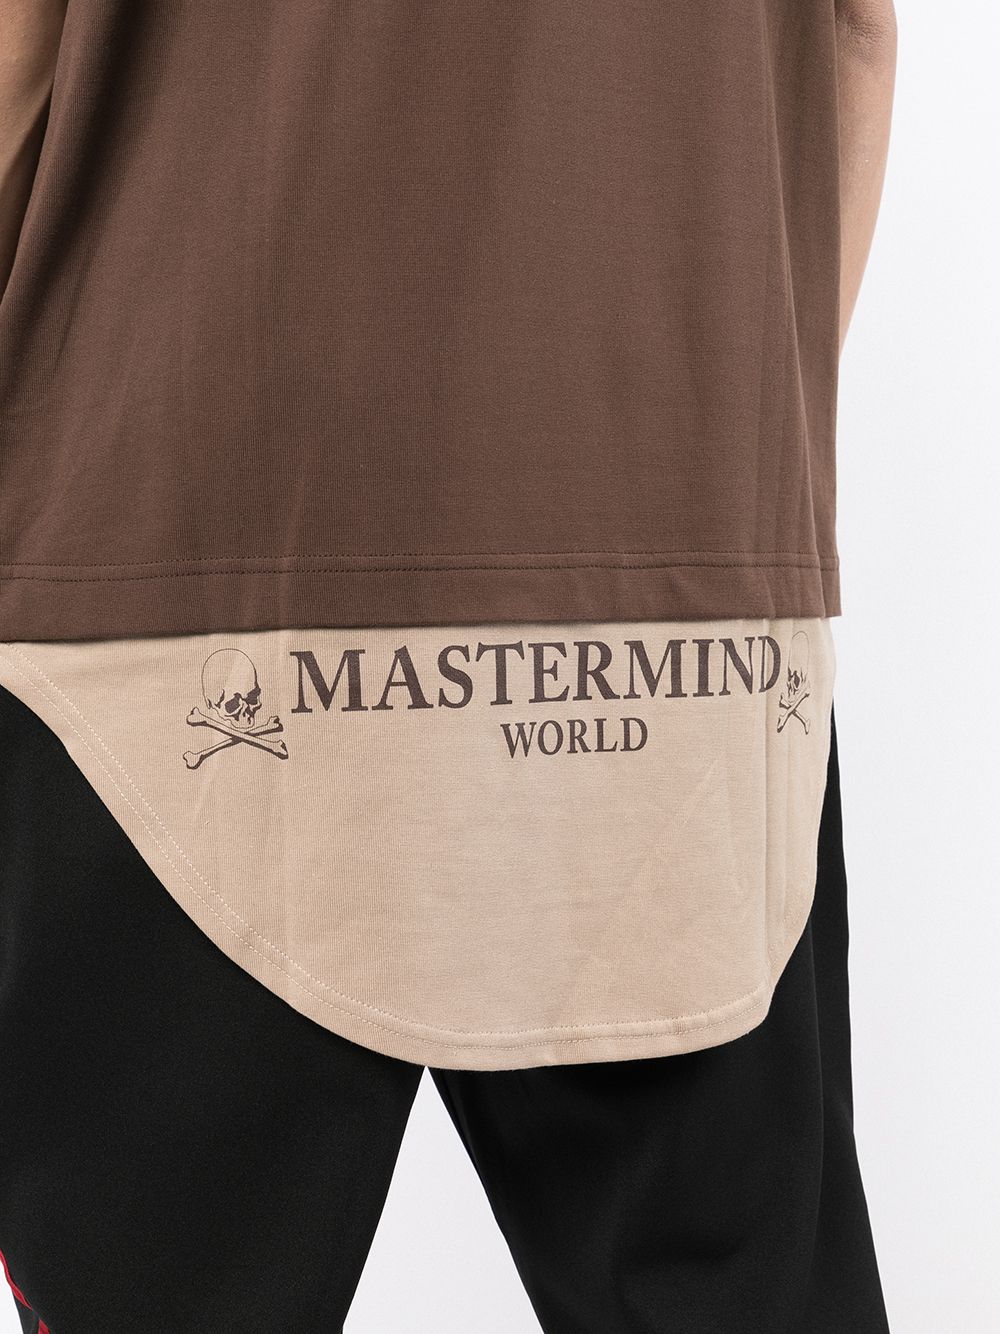 фото Mastermind world многослойная футболка с принтом